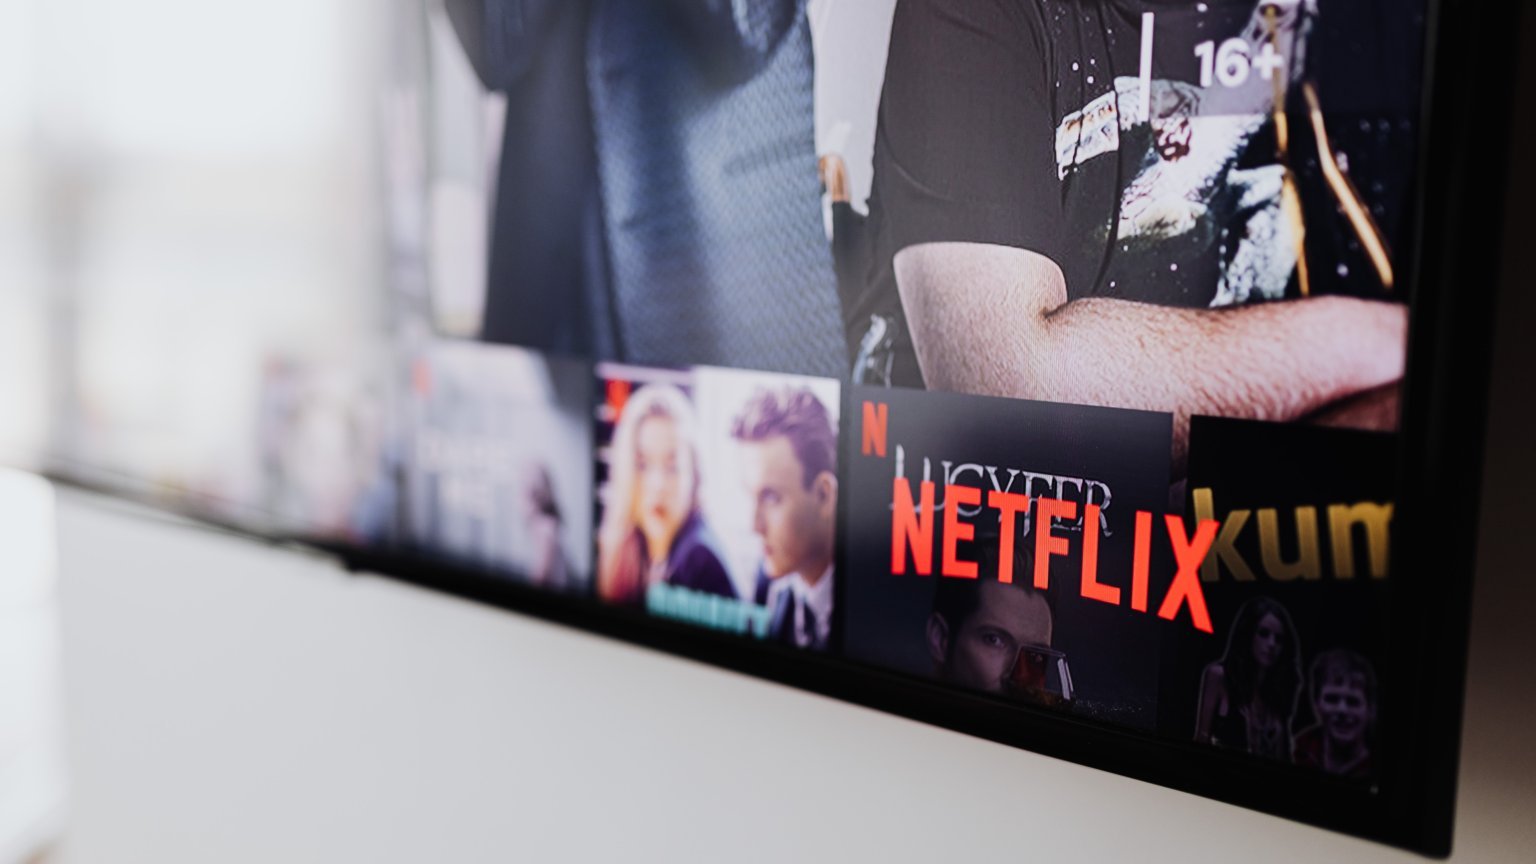 Netflix gaat zijn aanbod inperken: twee prominente leidinggevenden vertrekken